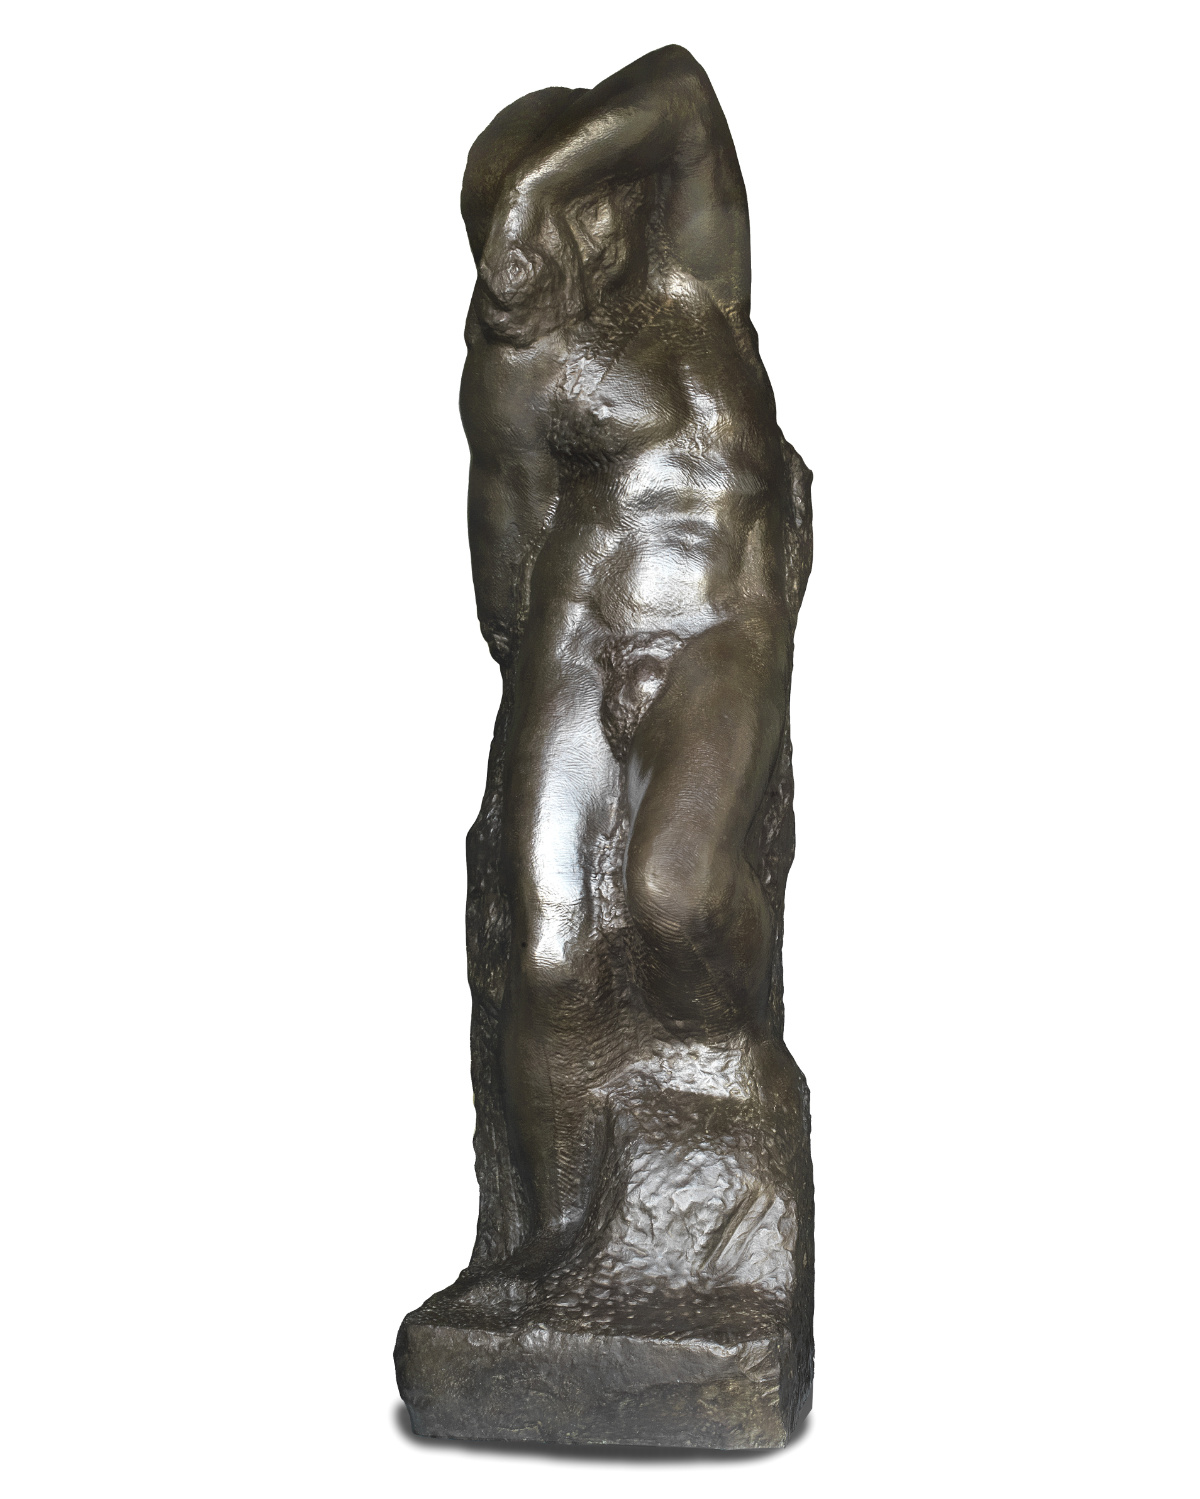 fonderia artistica ferdinando marinelli galleria bazzanti firenze replica in bronzo della scultura schiavo giovane di michelangelo